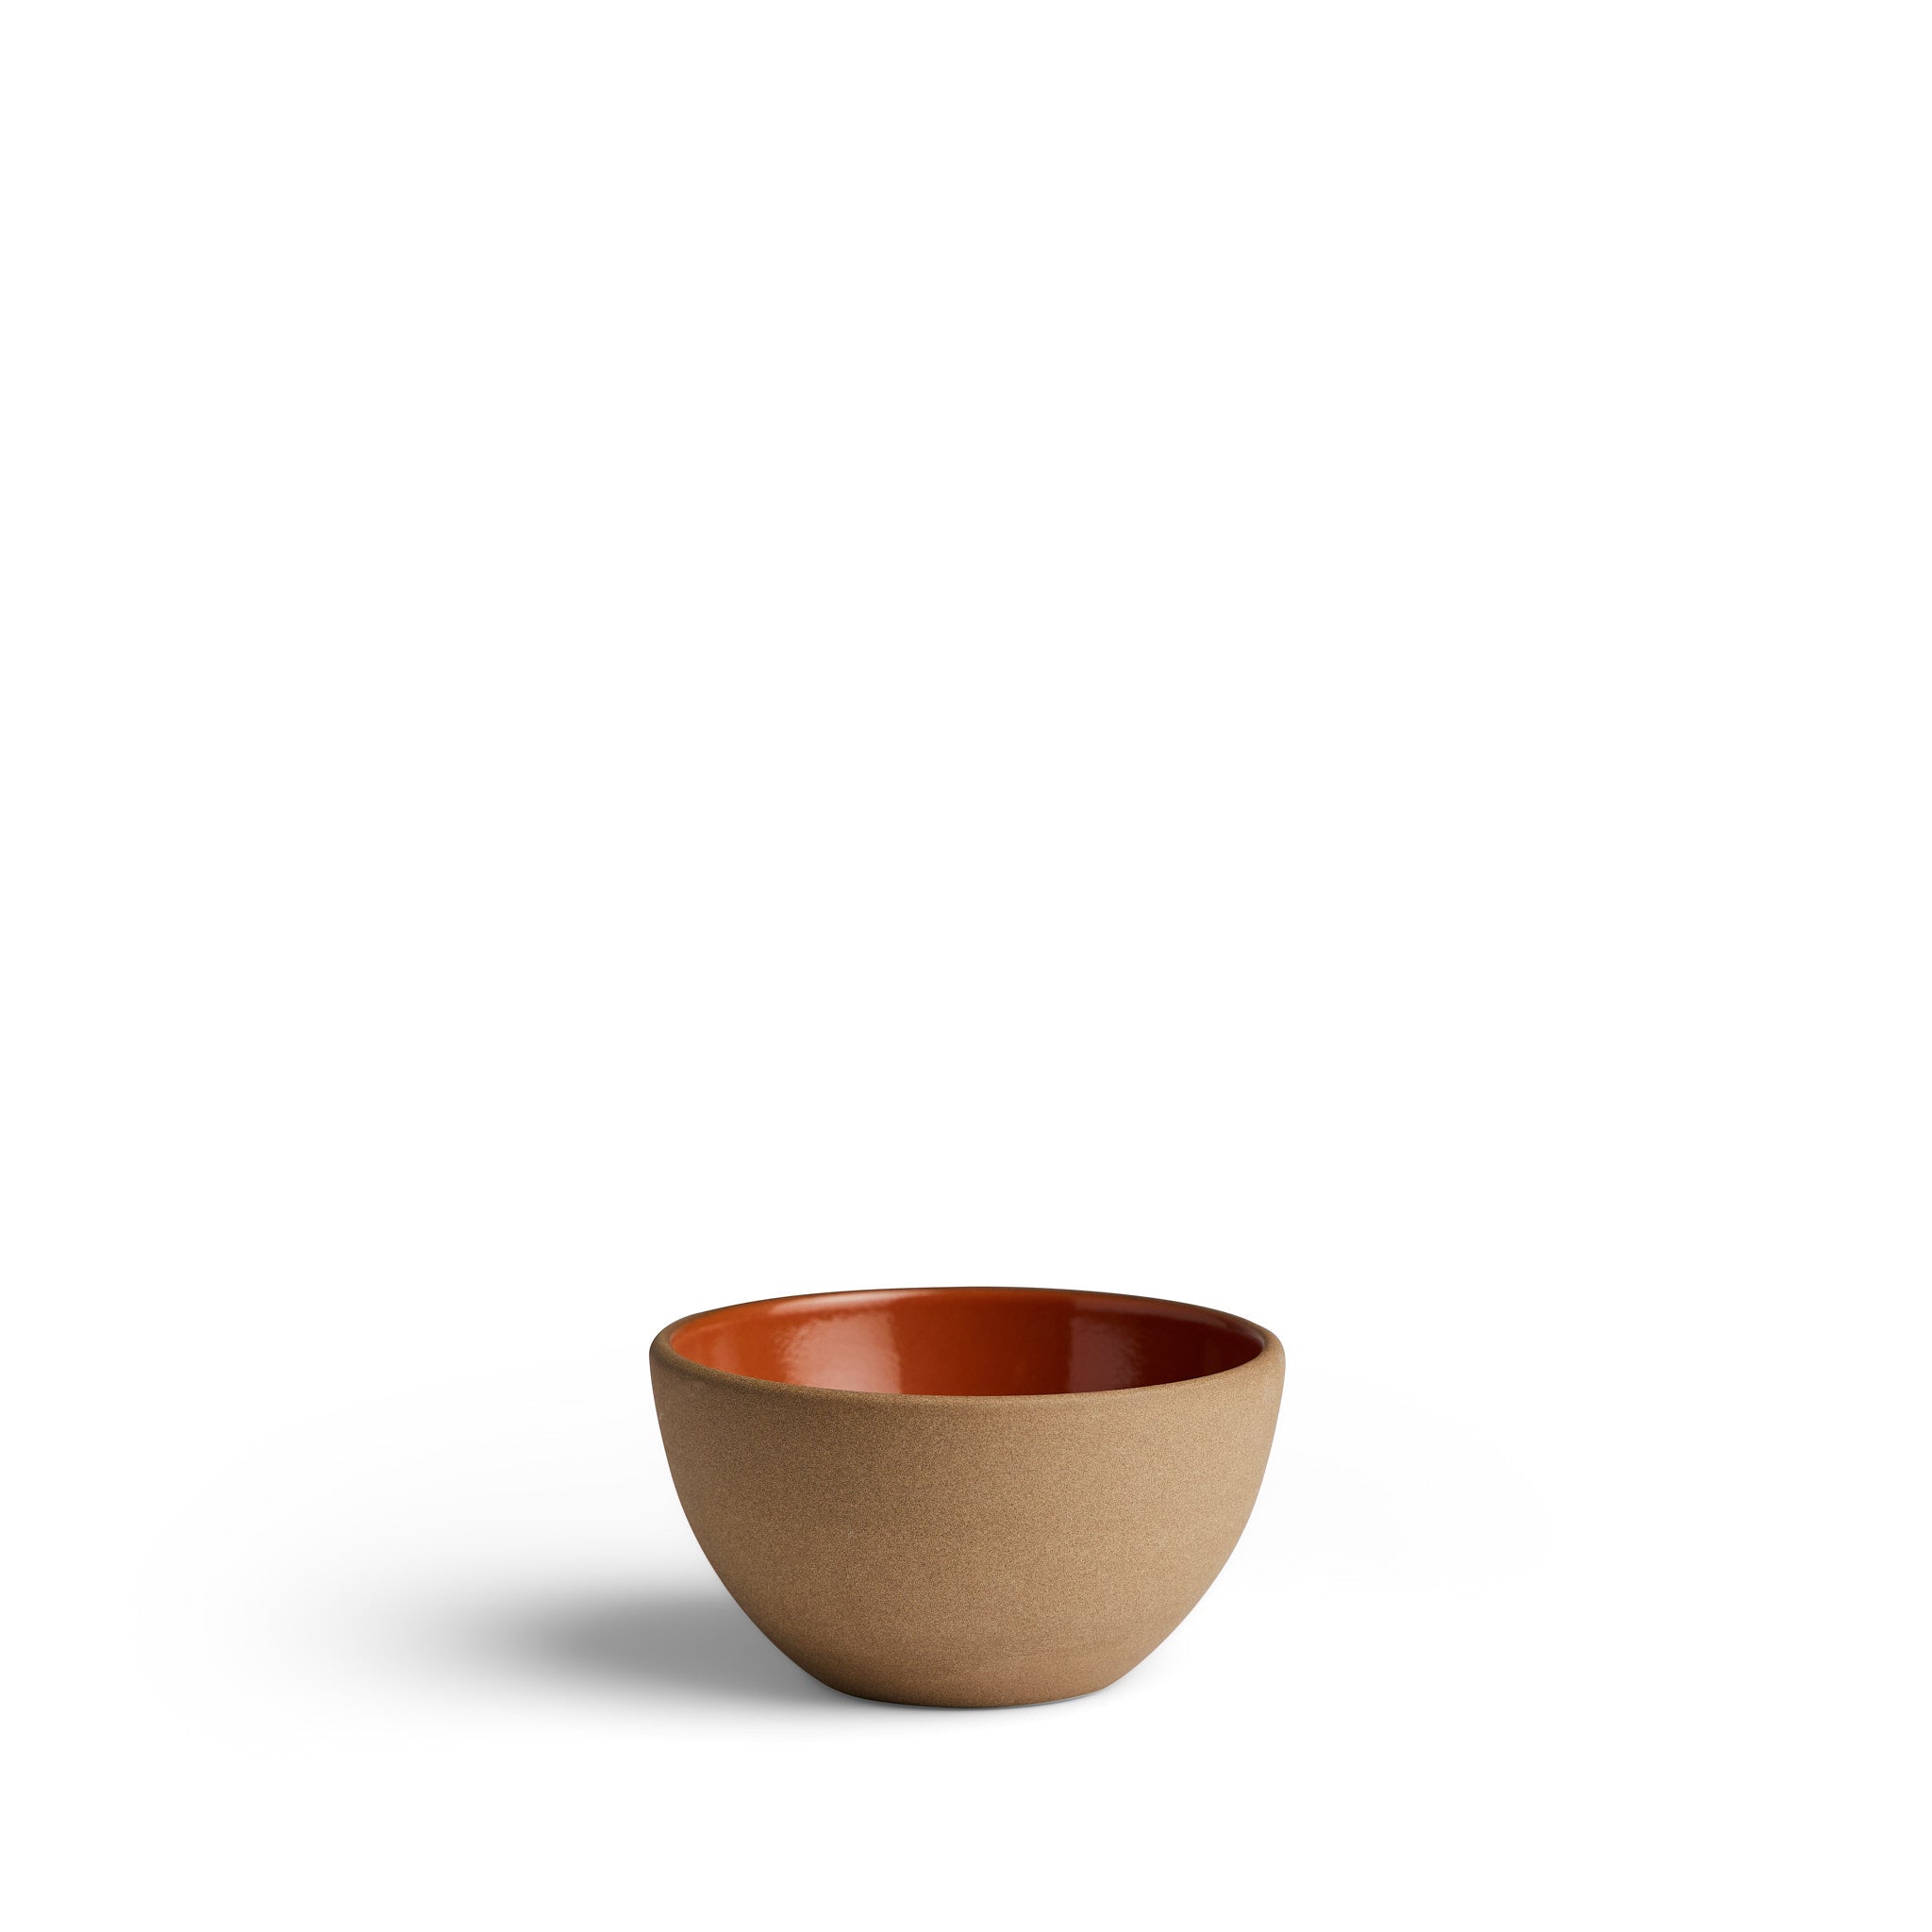 Plaza Desert Bowl in Tomato/Natural Zoom Image 1